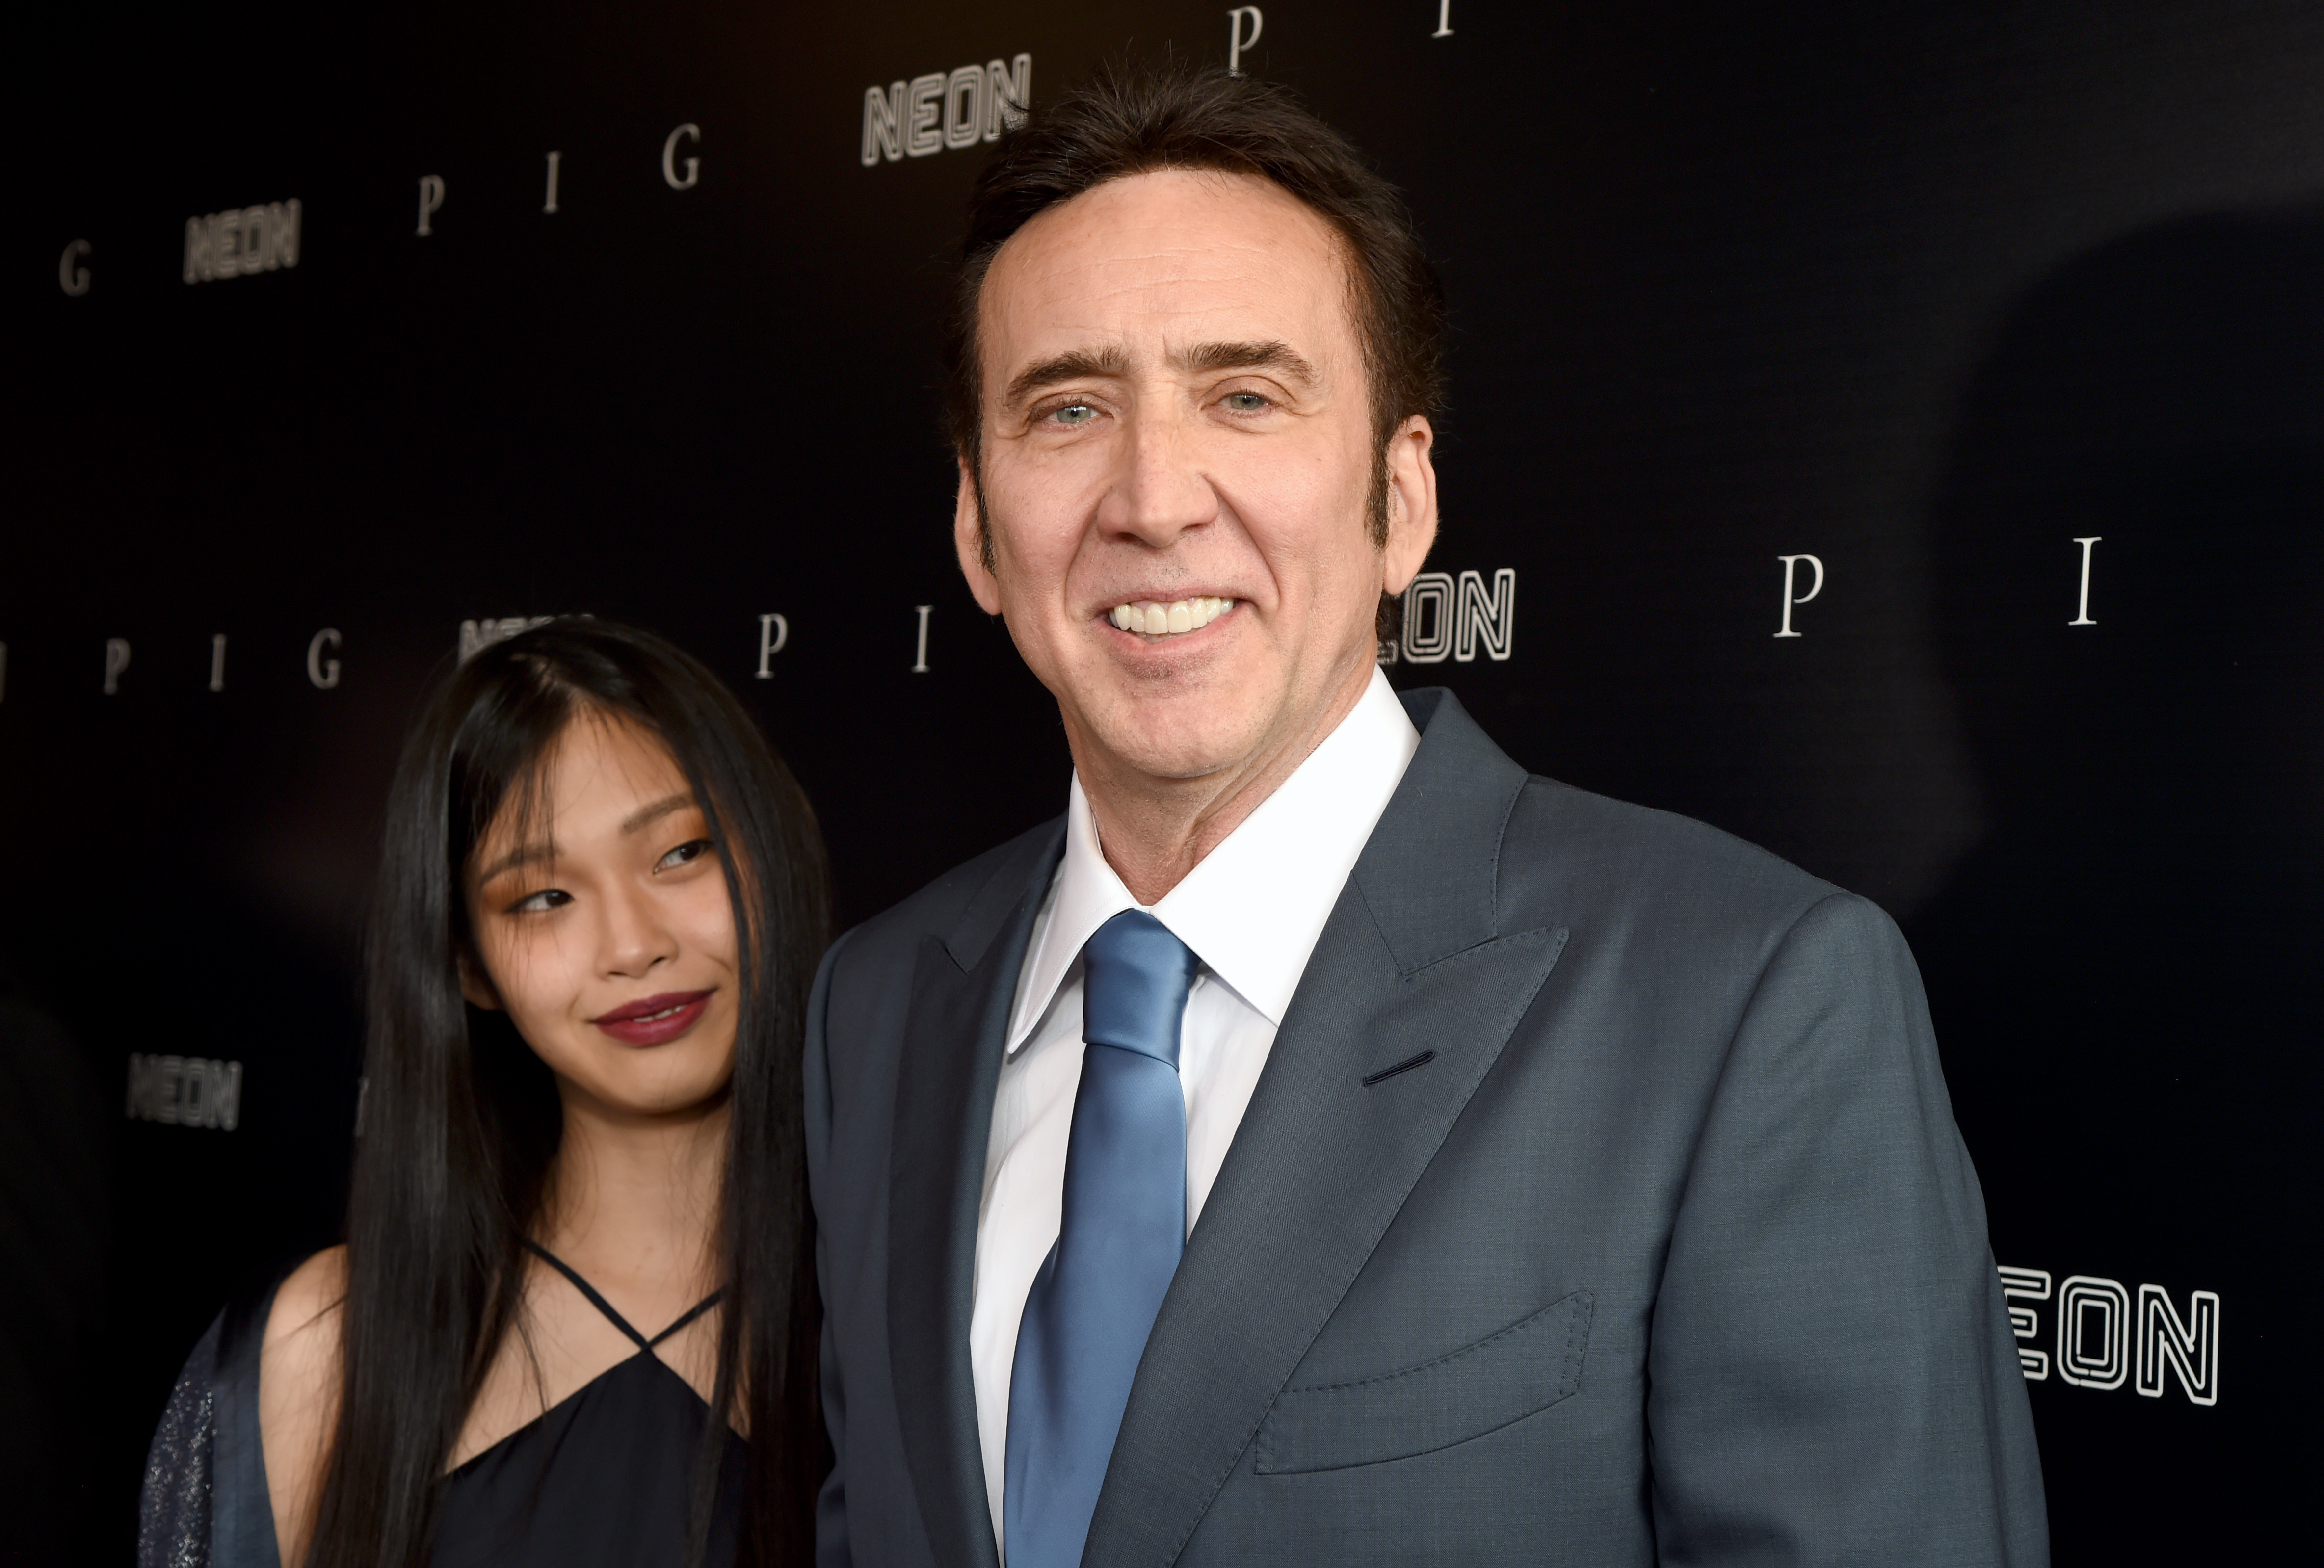 Riko Shibata et Nicolas Cage à la première du film "PIG" le 13 juillet 2021 à Los Angeles, Californie | Source : Getty Images